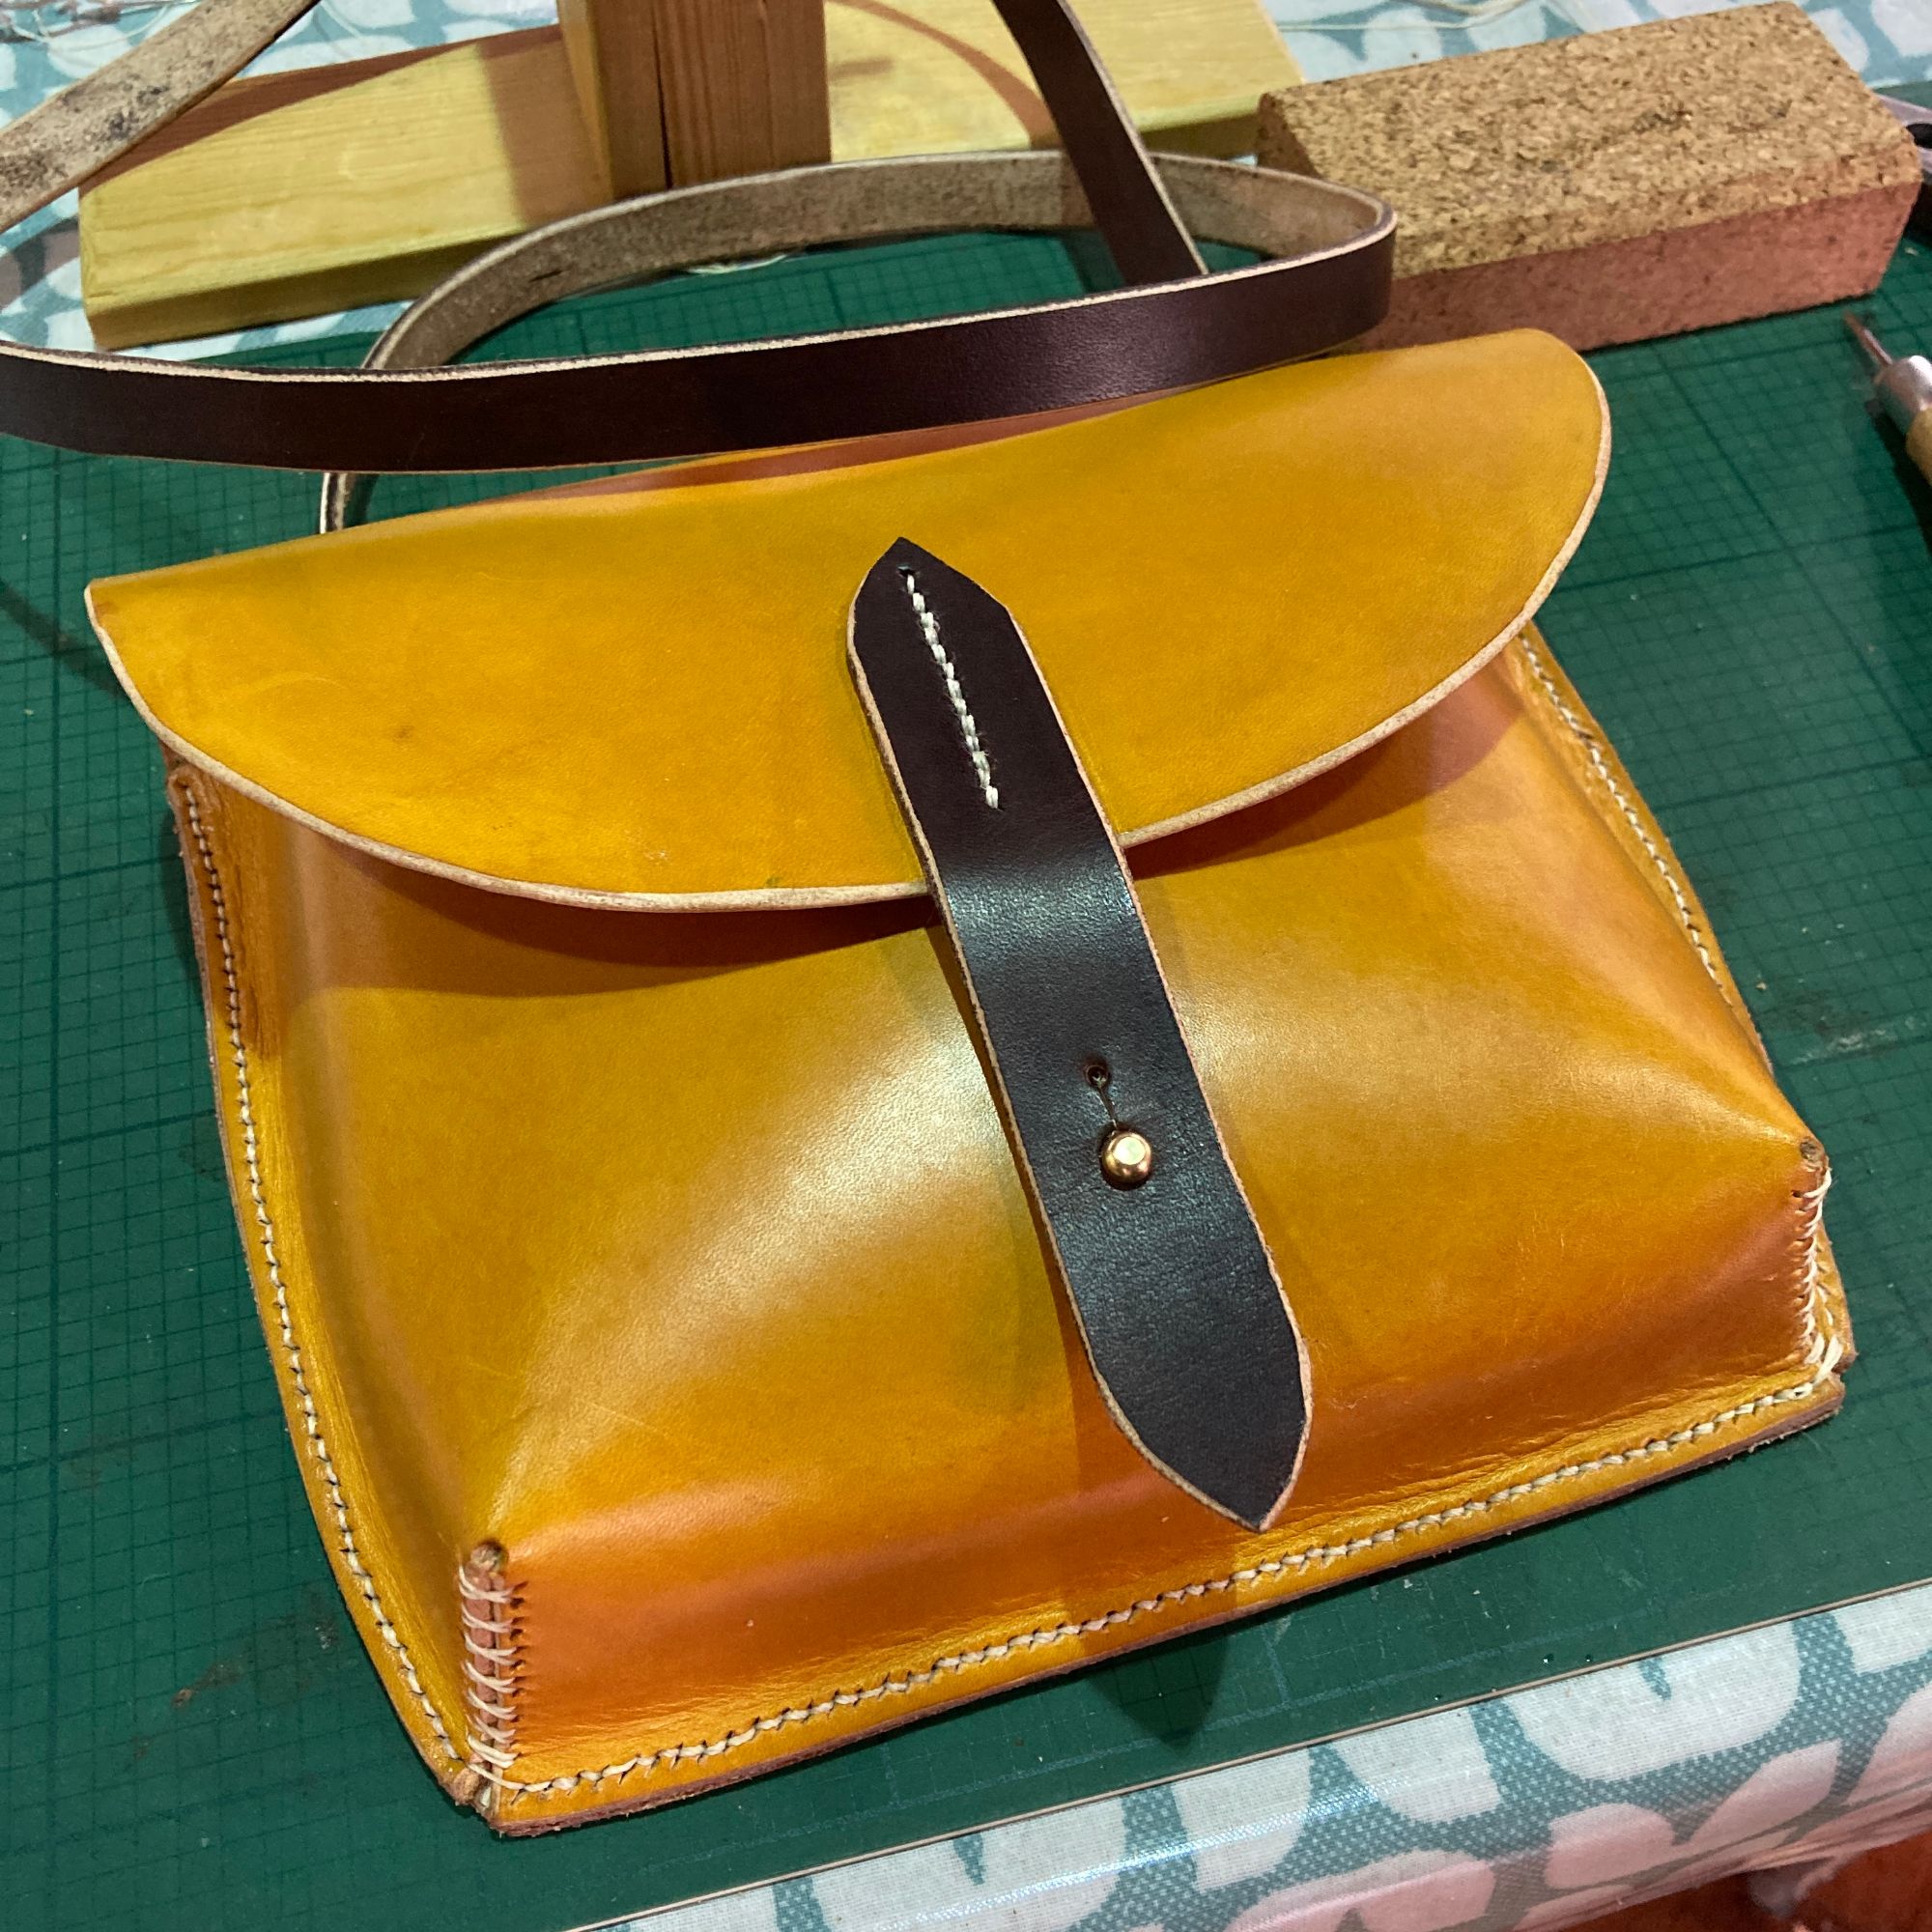 Leather Bag Workshop - Handmade